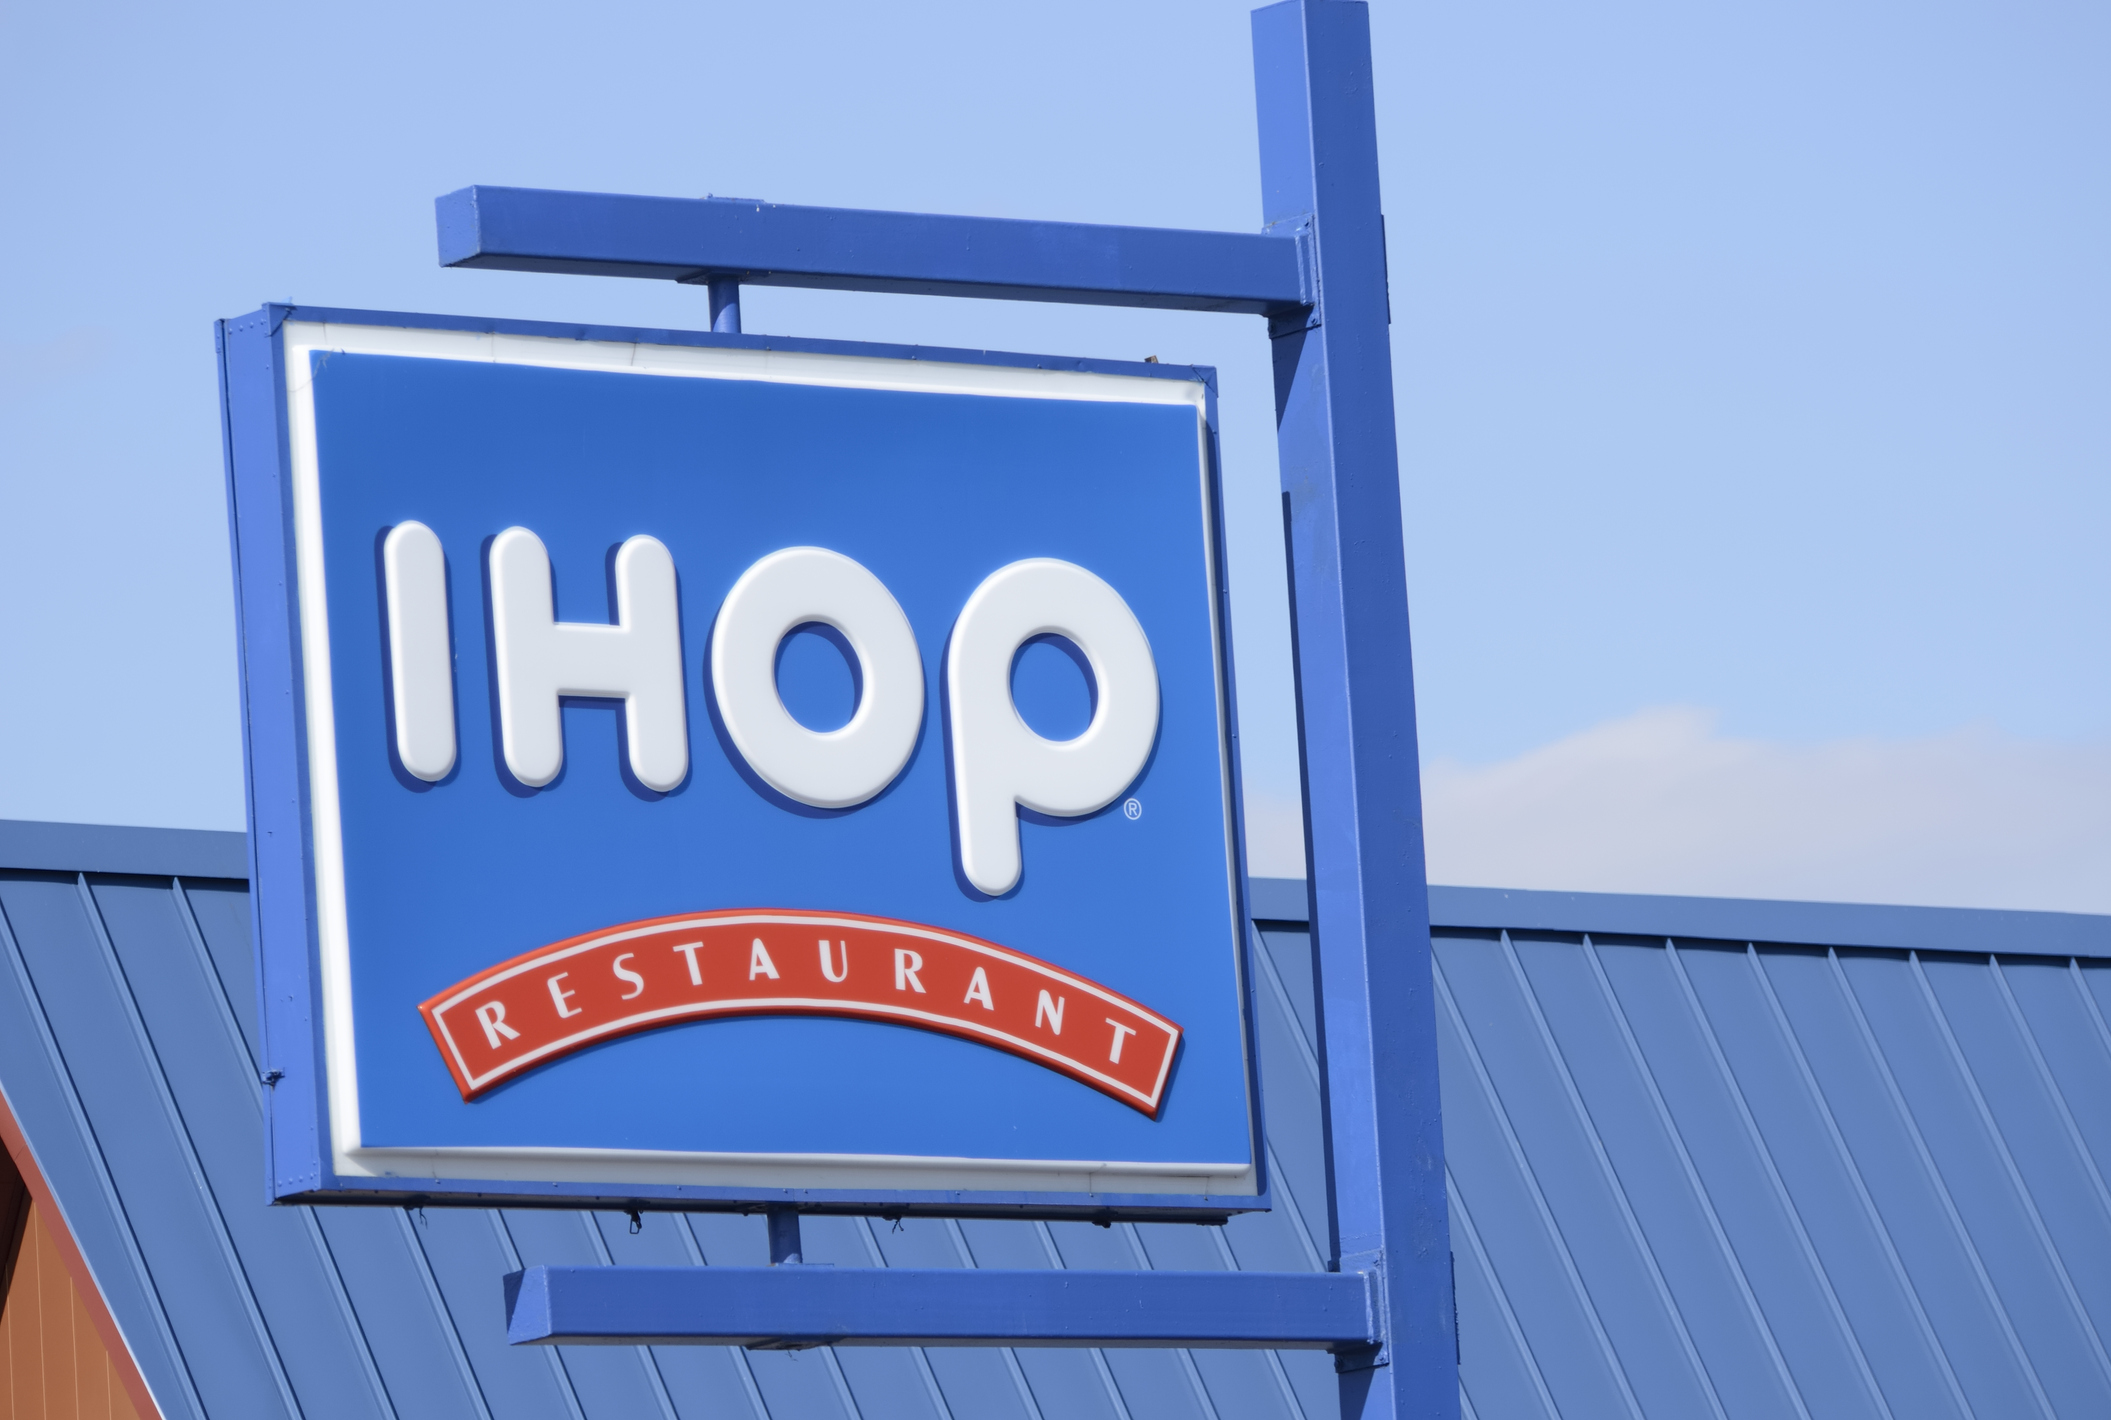 IHOP Is Renaming Itself IHOB - What Does IHOb Mean?